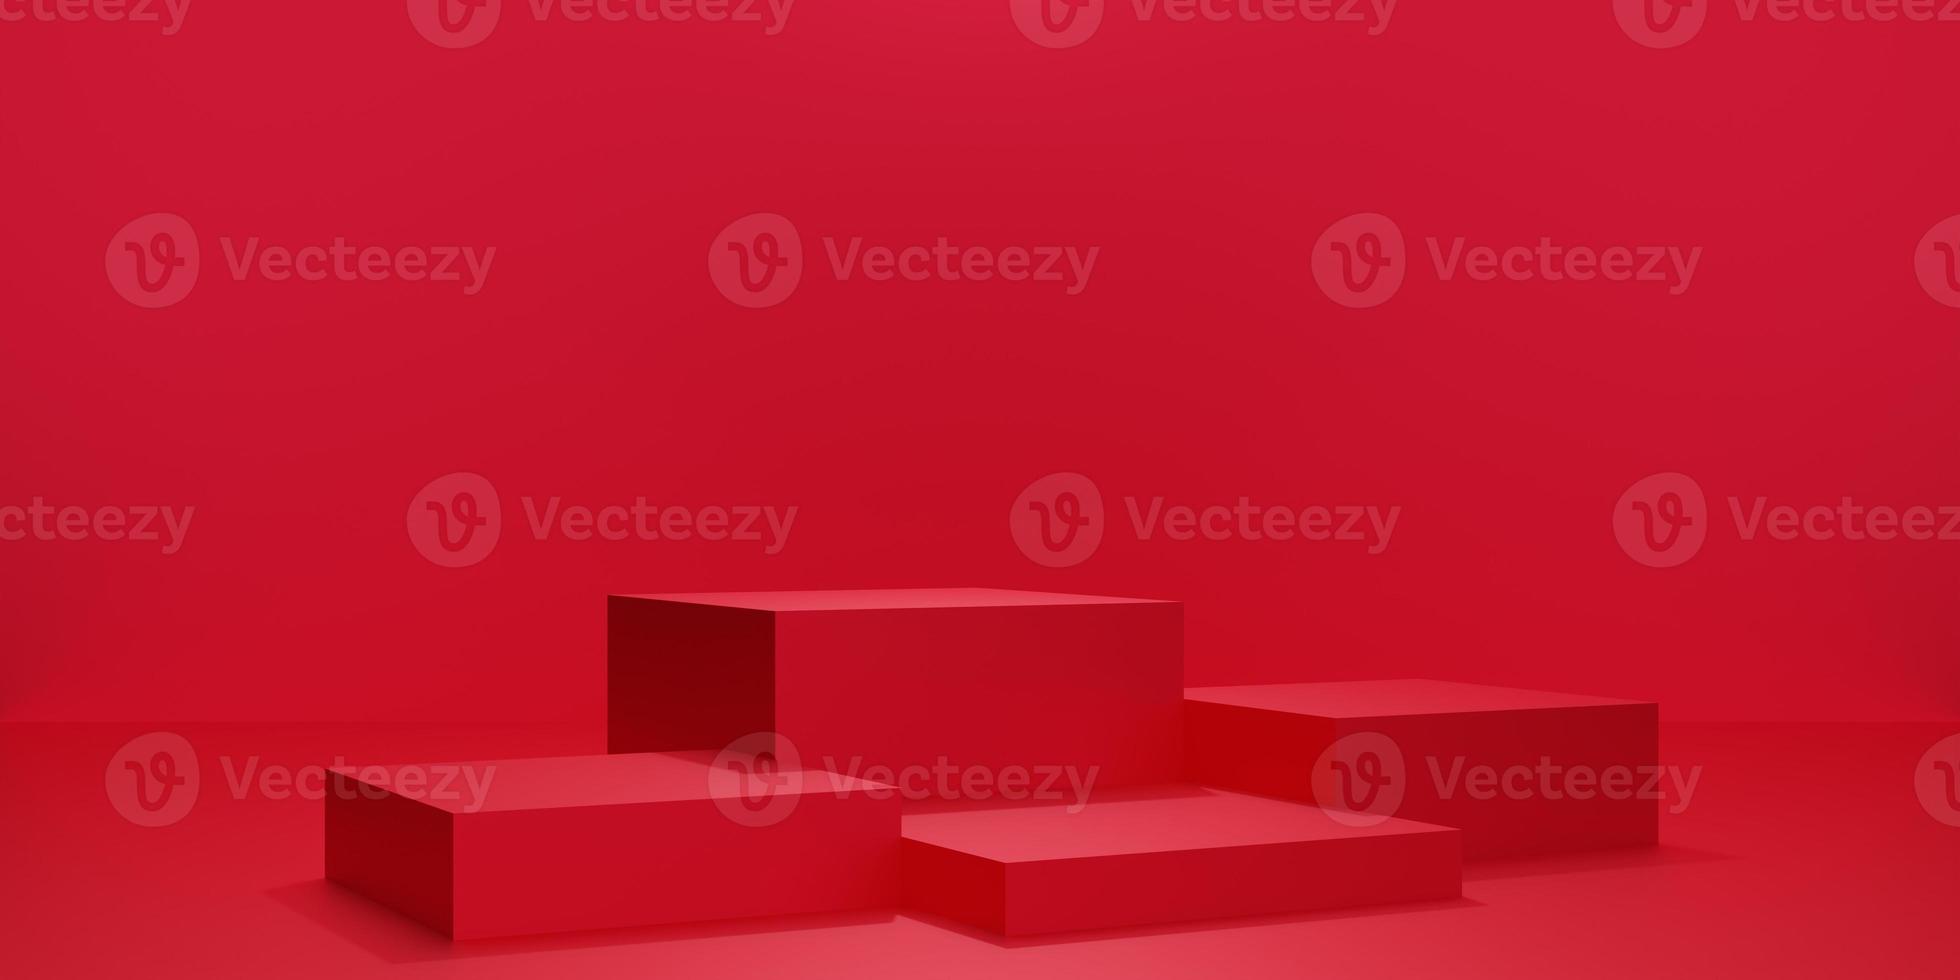 3d röd kub podium eller piedestal med tomt studiorum, produktbakgrund, mallmockup för alla hjärtans dag-visning foto